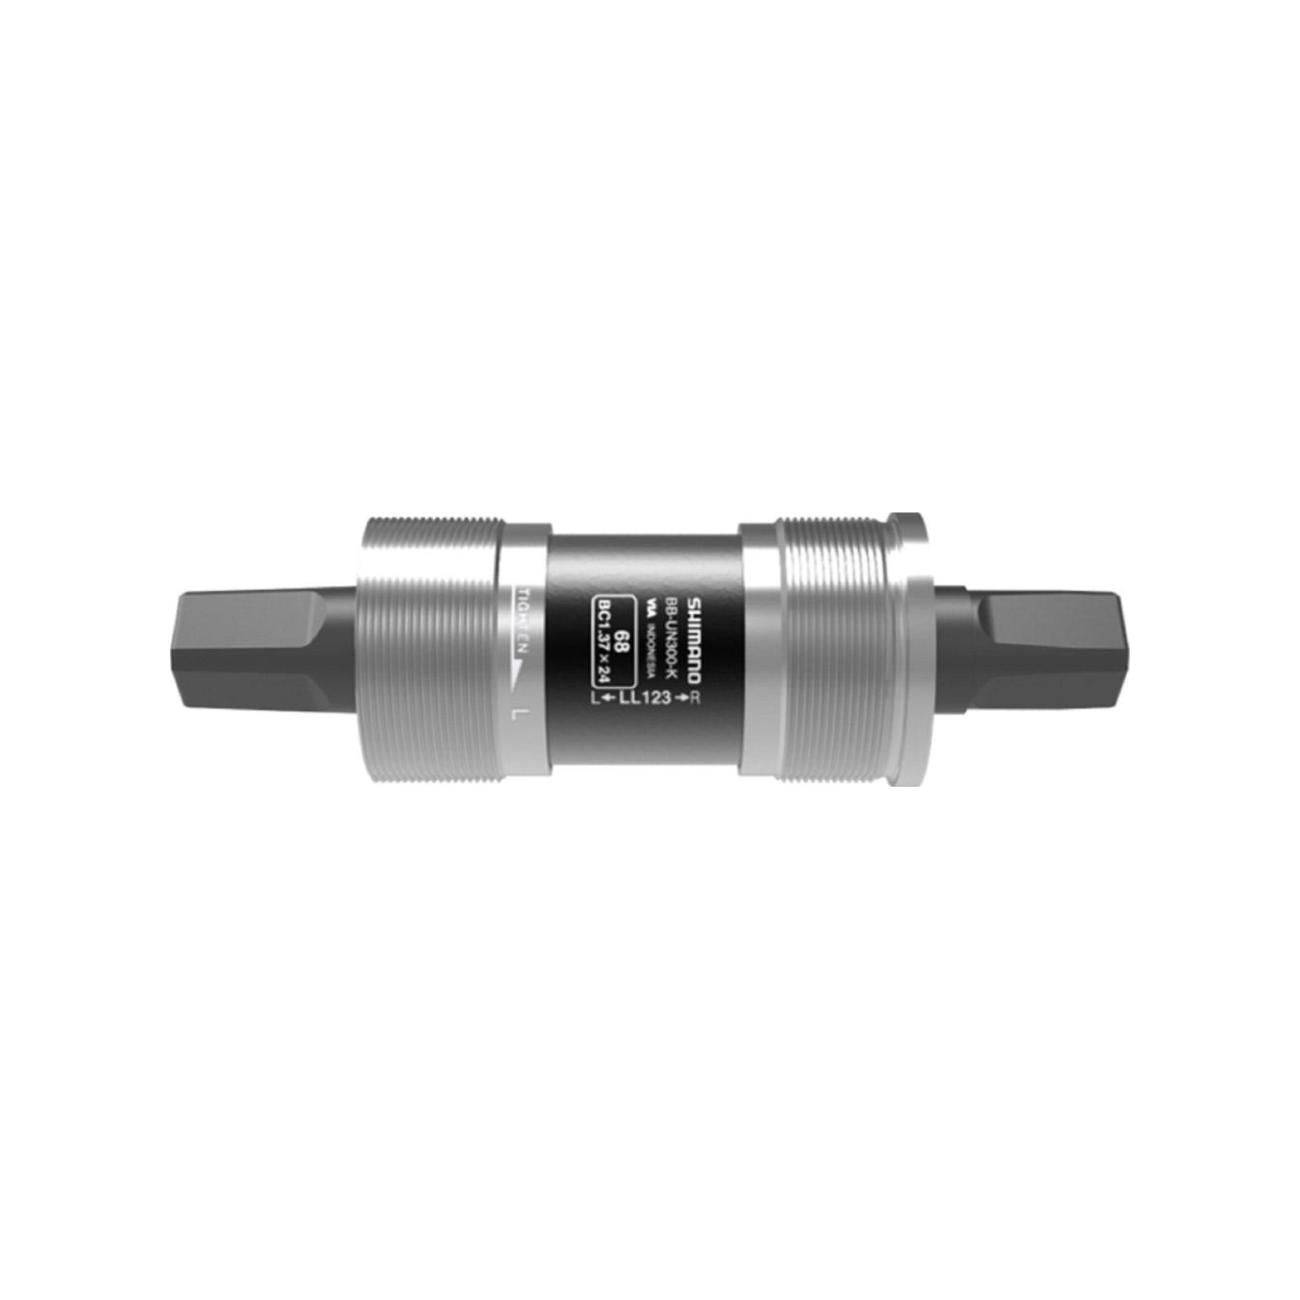 
                SHIMANO středová osa - AXIS UN300 BSA 68x122,5mm D-NL - stříbrná/antracitová
            